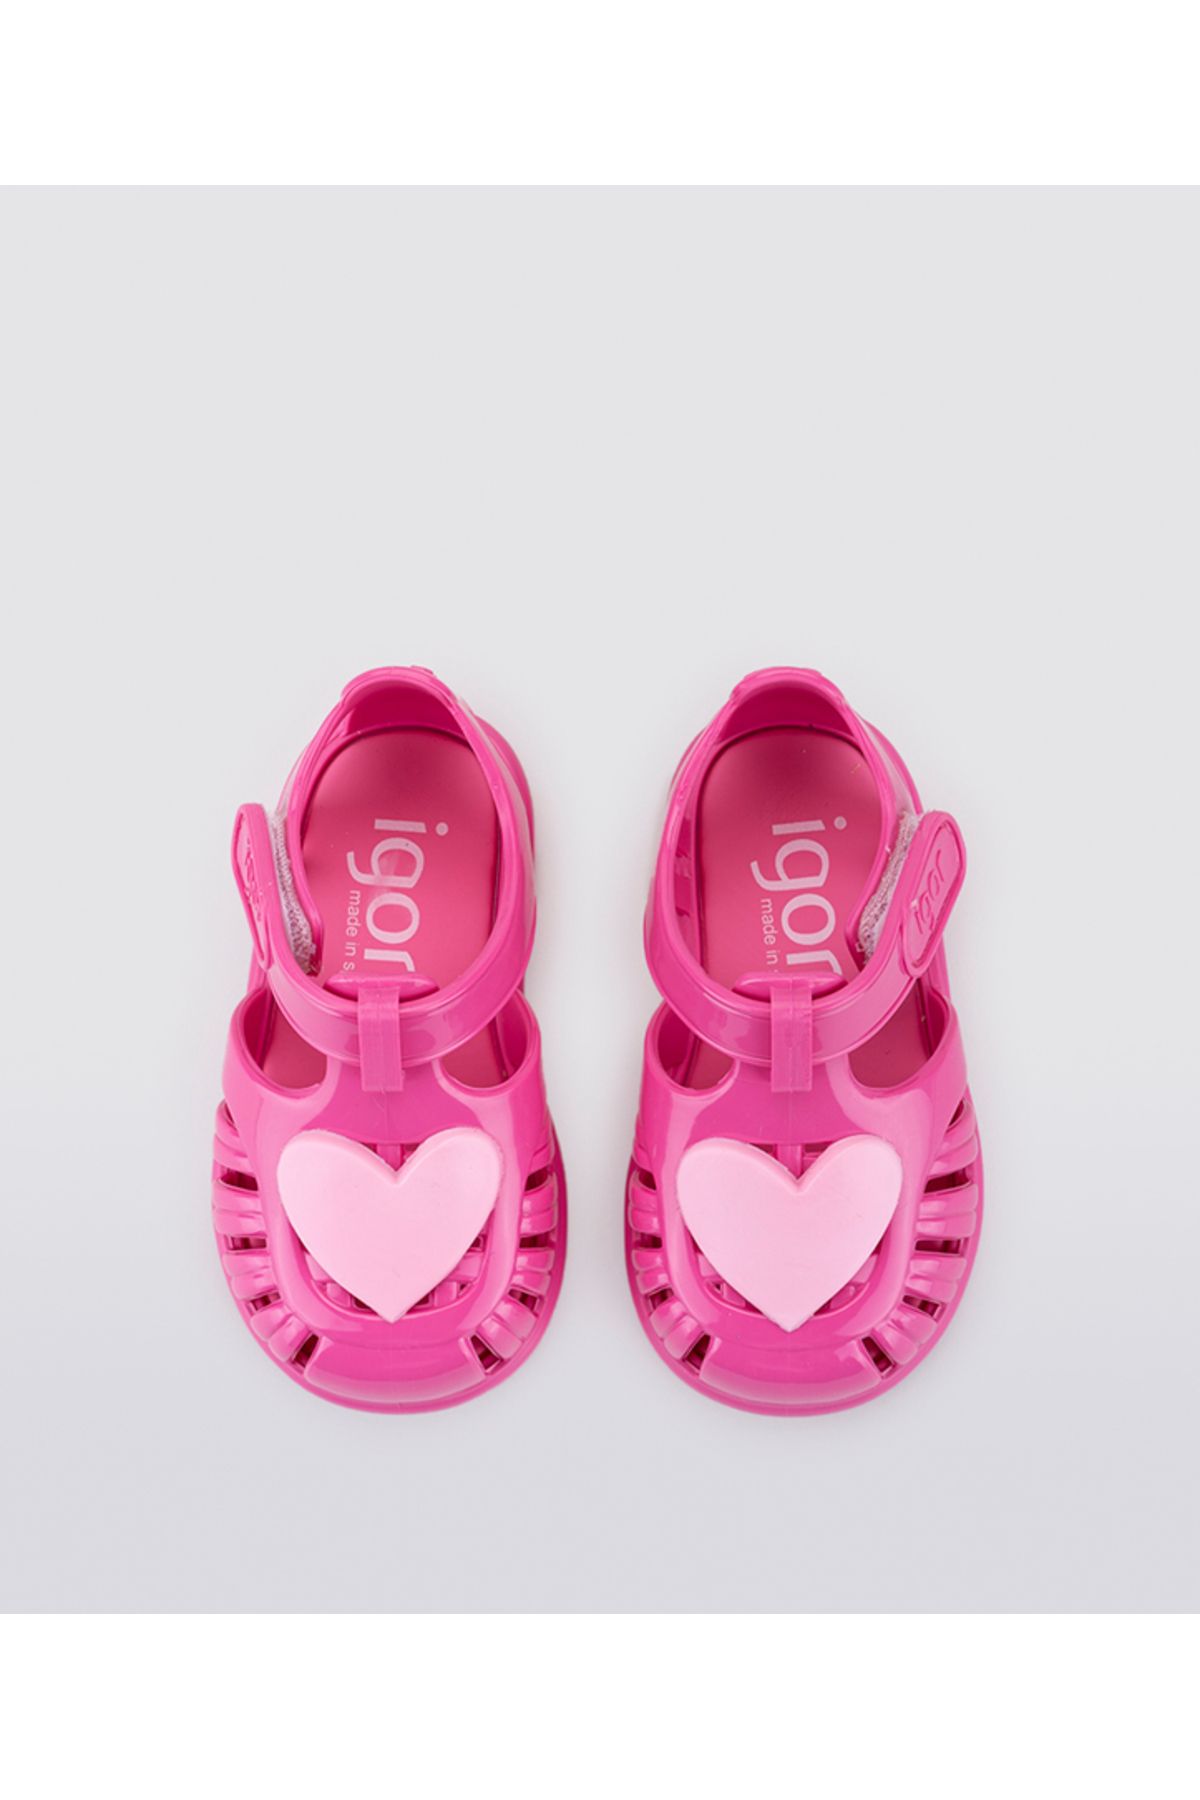 IGOR S10310 TOBBY Gloss Love Sandal